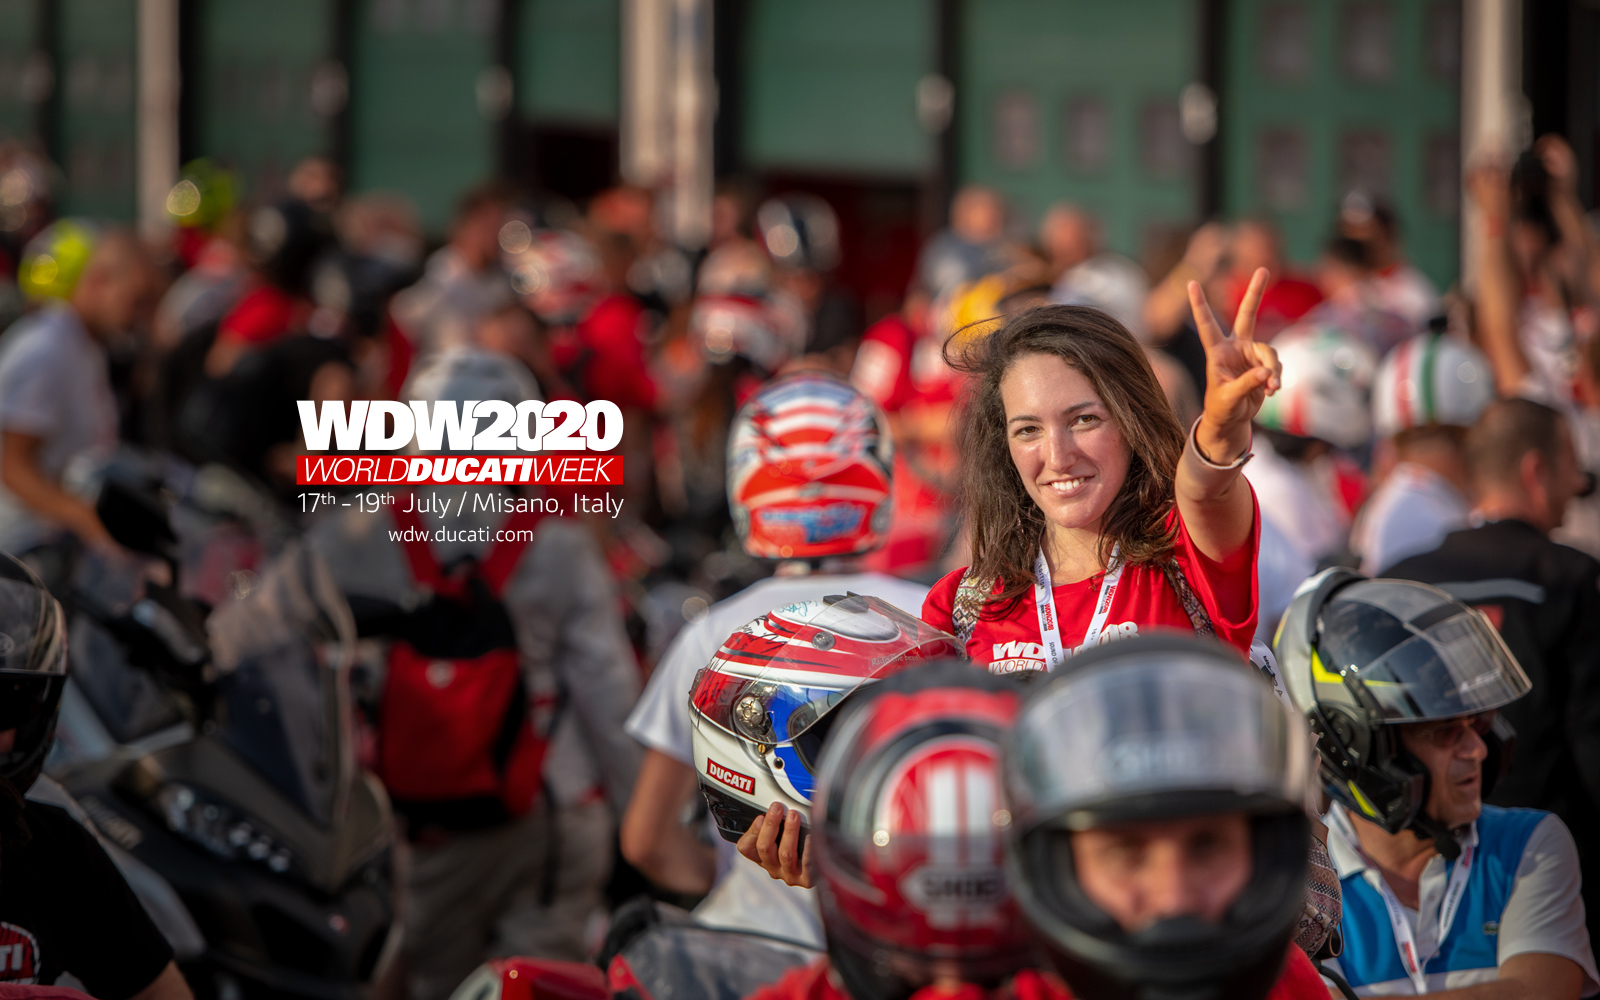 World Ducati week 2020 - main